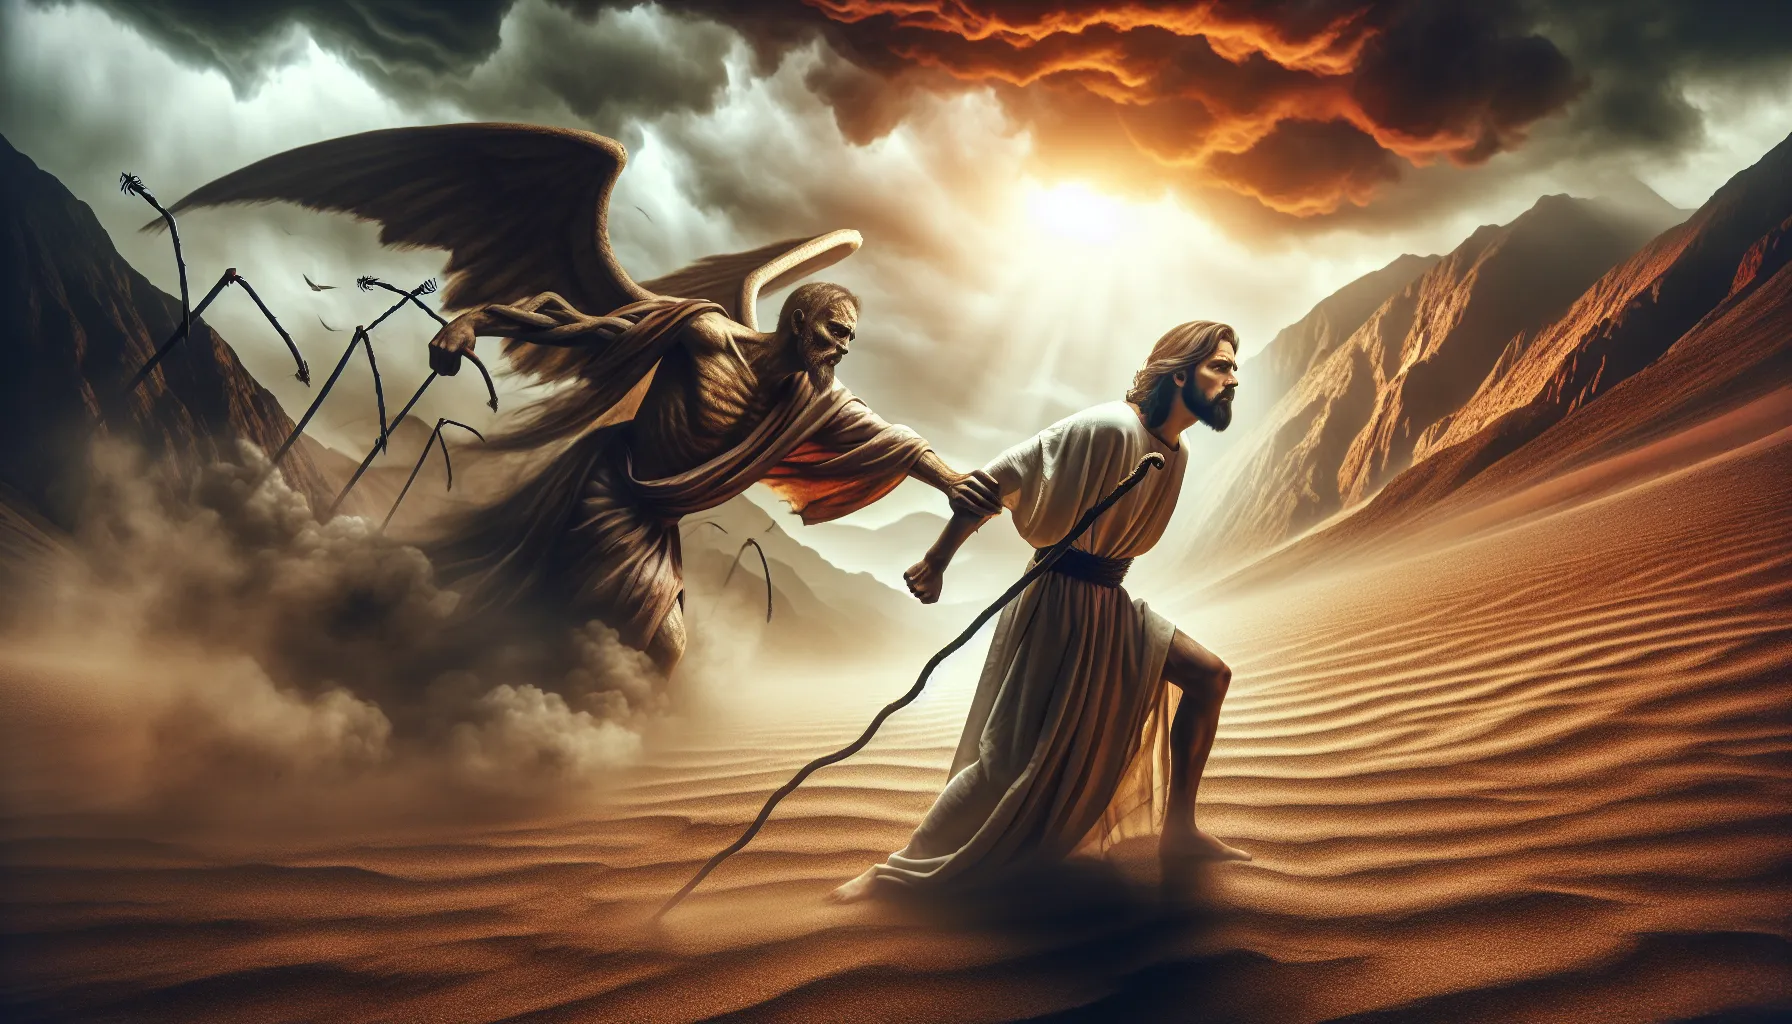 Representación artística de Jesús resistiendo a las tentaciones en el desierto, simbolizando su fortaleza espiritual y determinación en la fe.